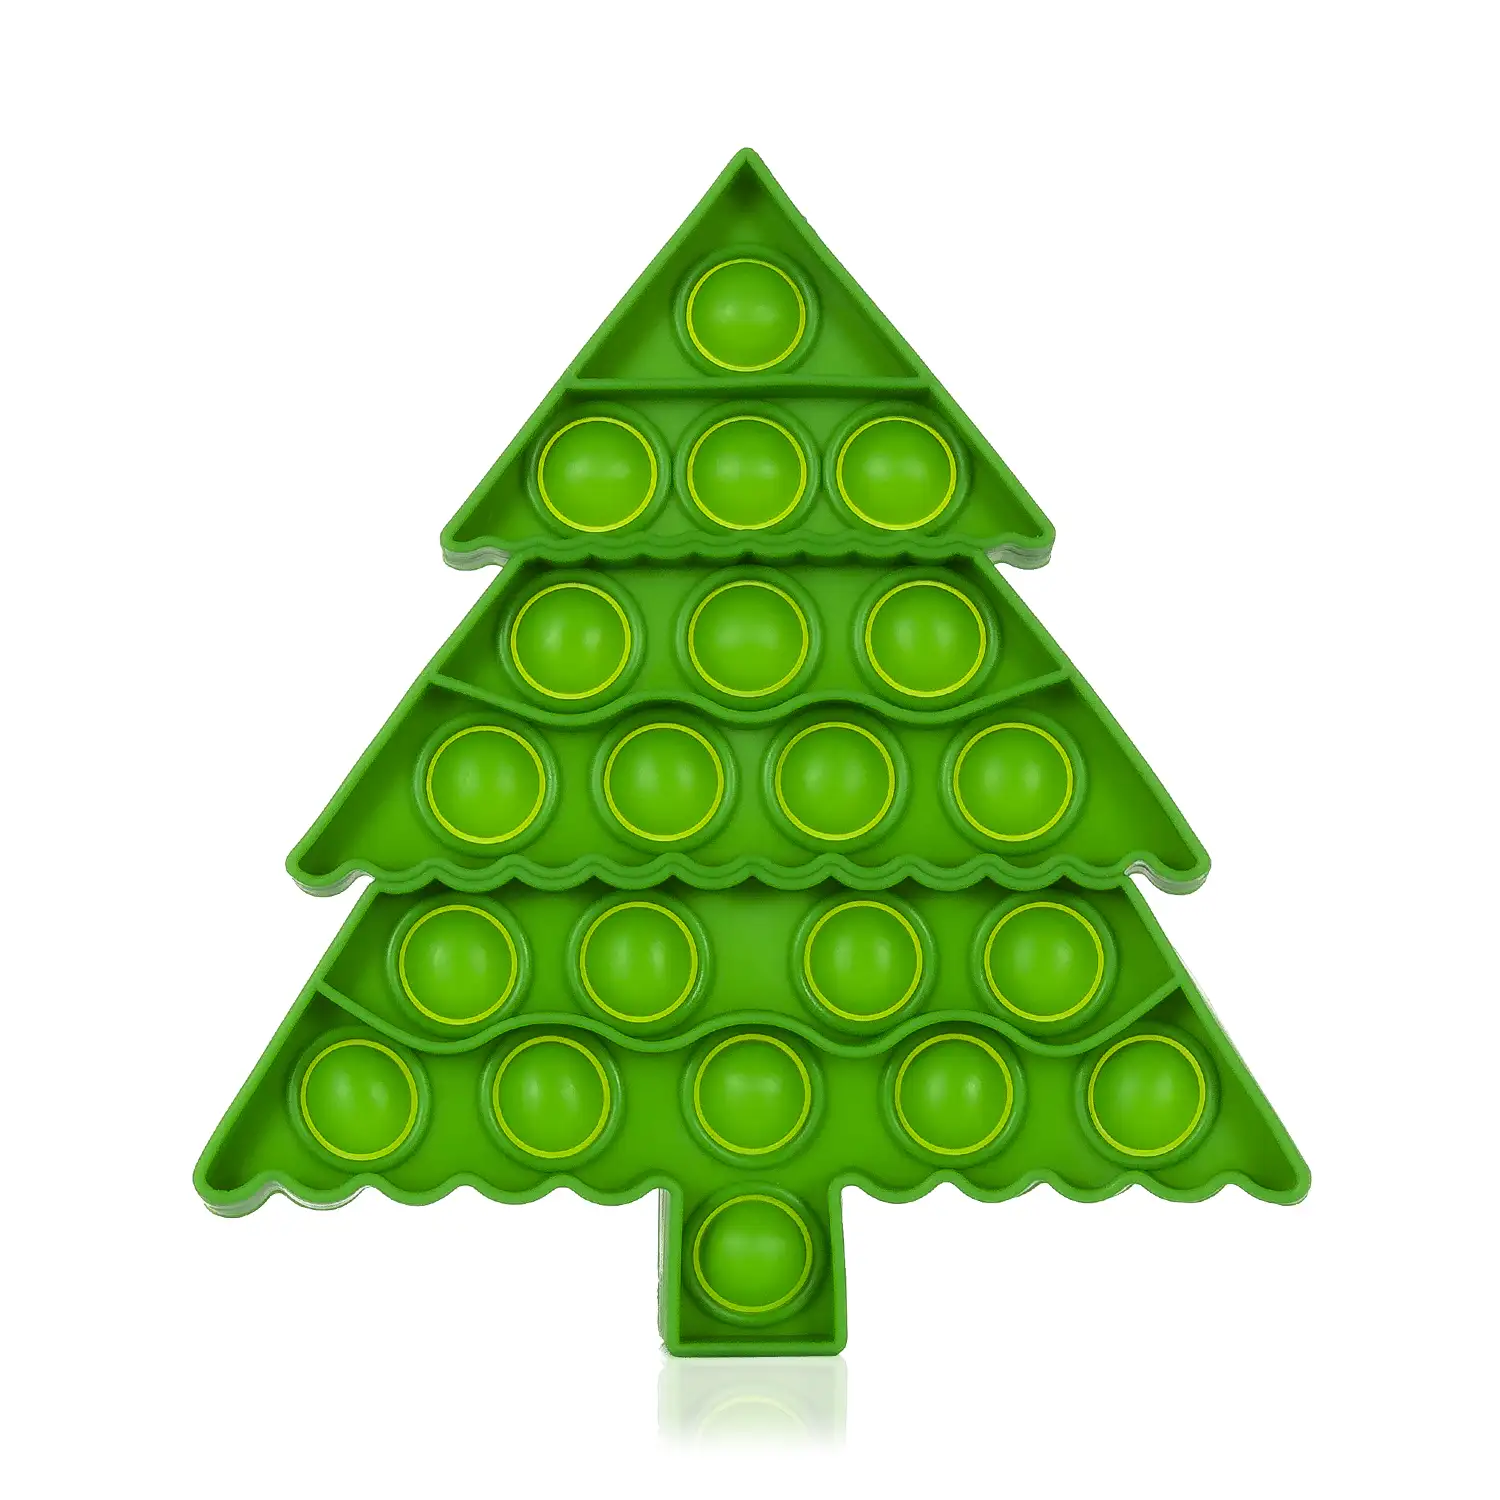 Bubble Pop It juguete sensitivo desestresante, burbujas de silicona para apretar y pulsar. Diseño árbol de navidad.